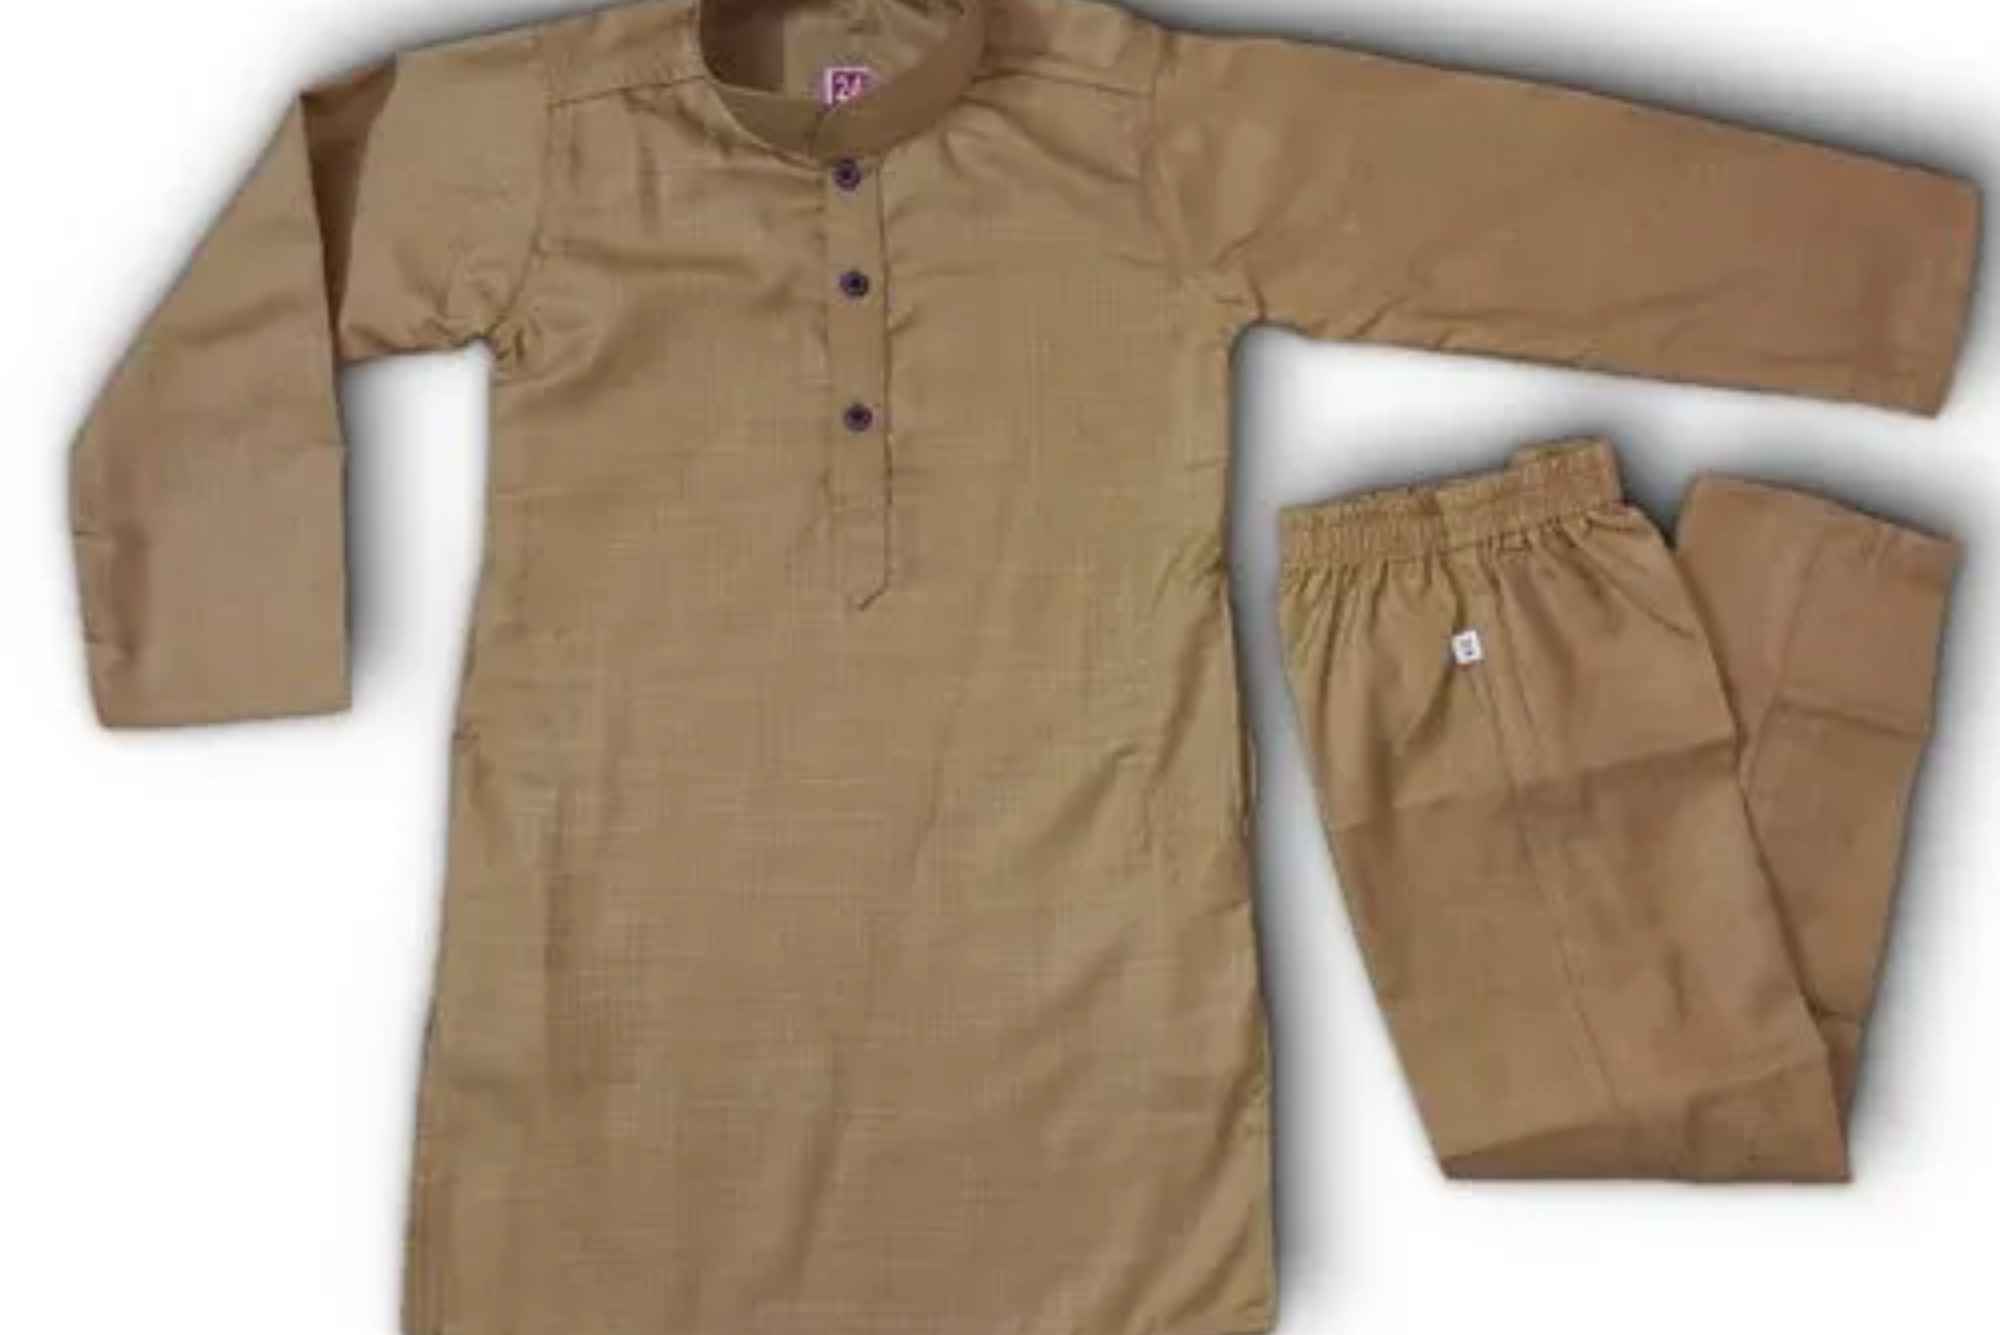 how to stitch kurta pajama for baby boy